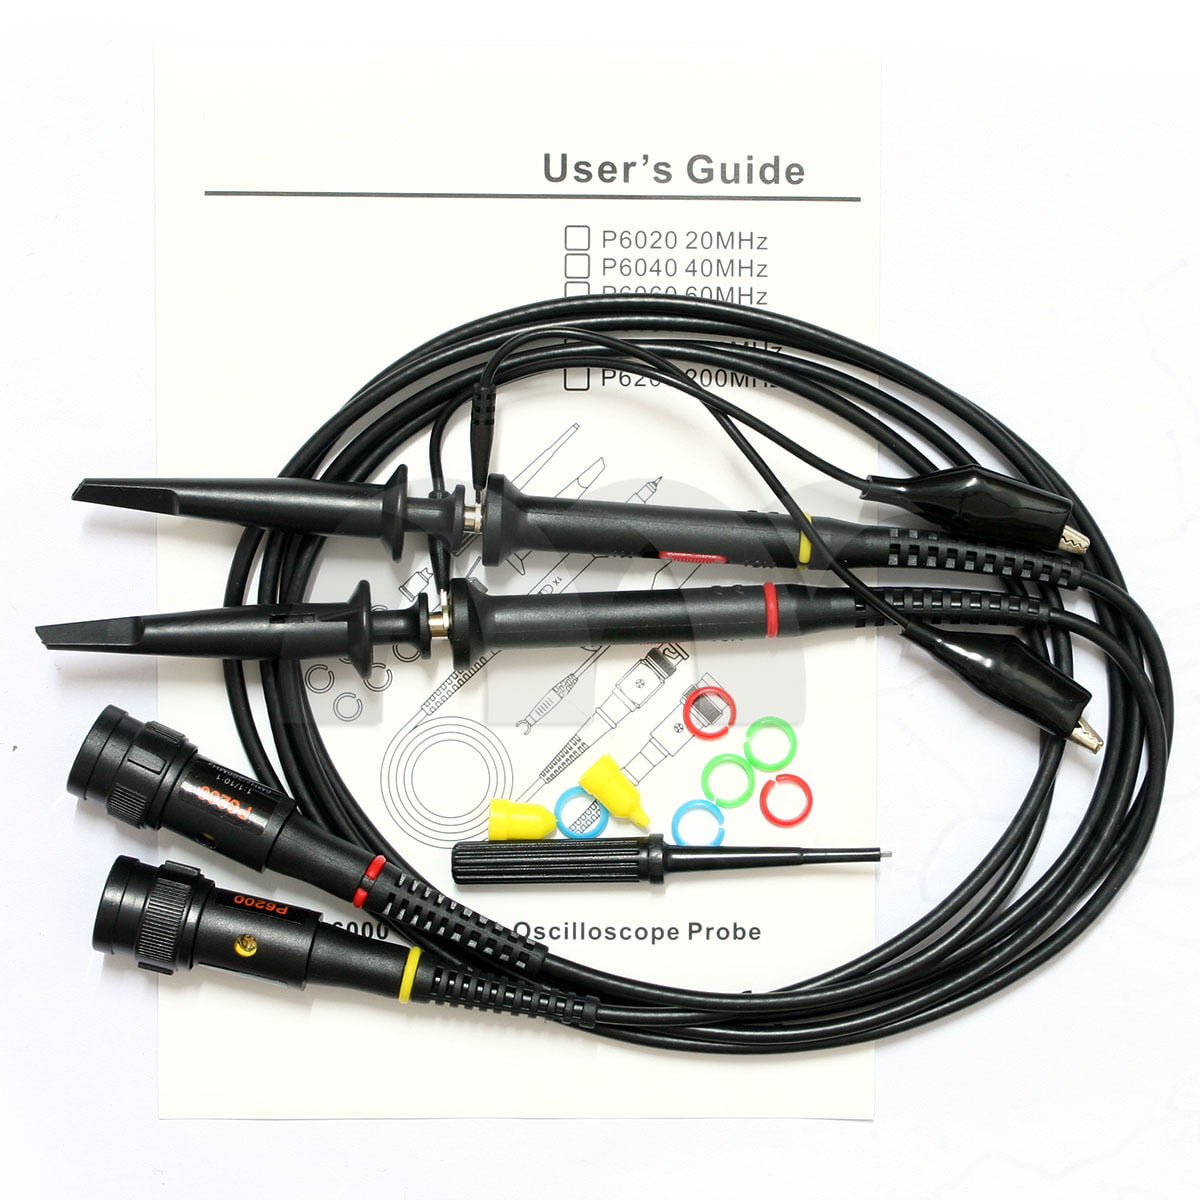 USA　200MHz Oscilloscope Scope analyzer Probe test leads kit for HP Tektronix 